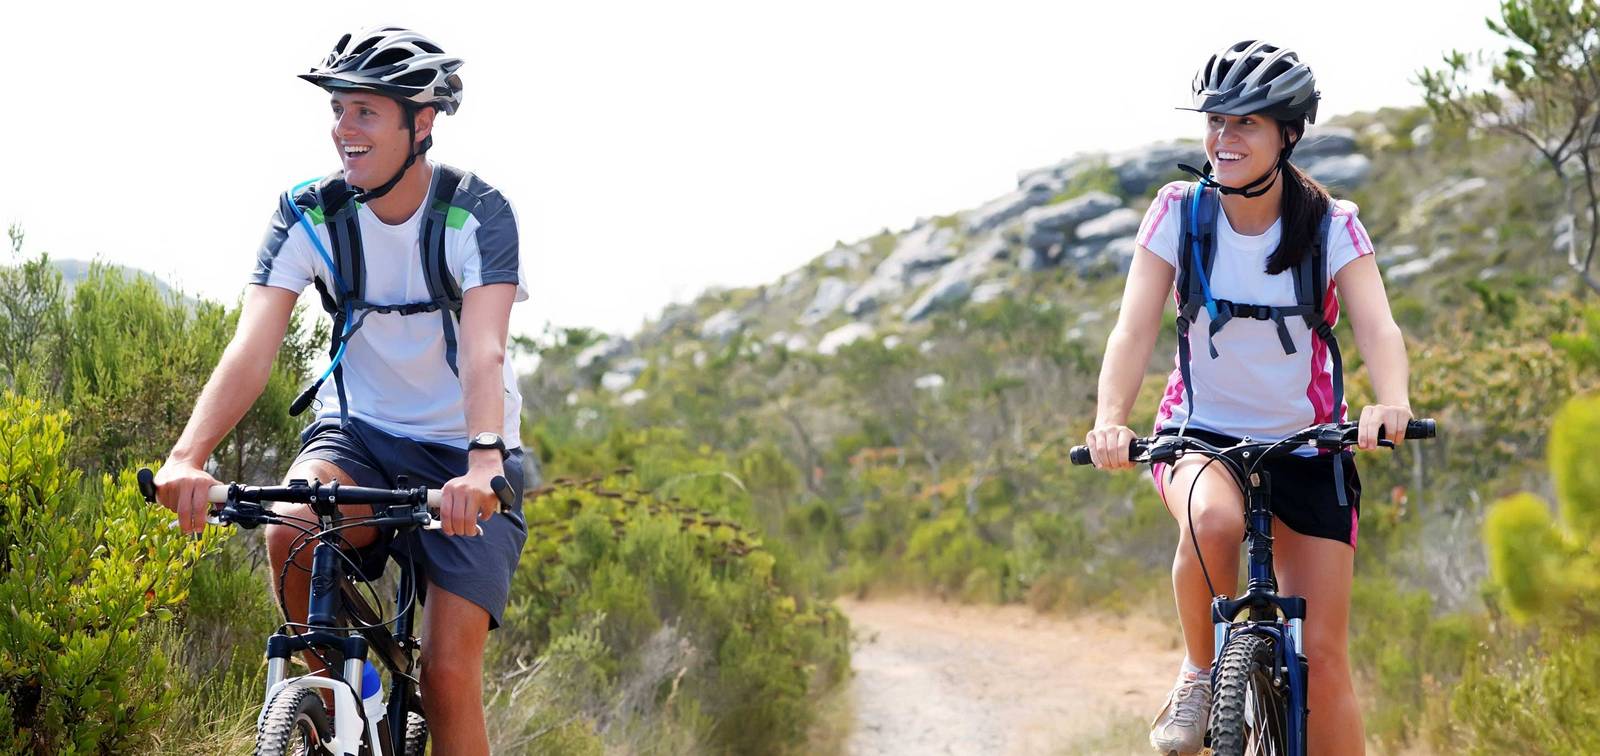 Zwei Mountainbiker sind sportlich auf einem Trail unterwegs.